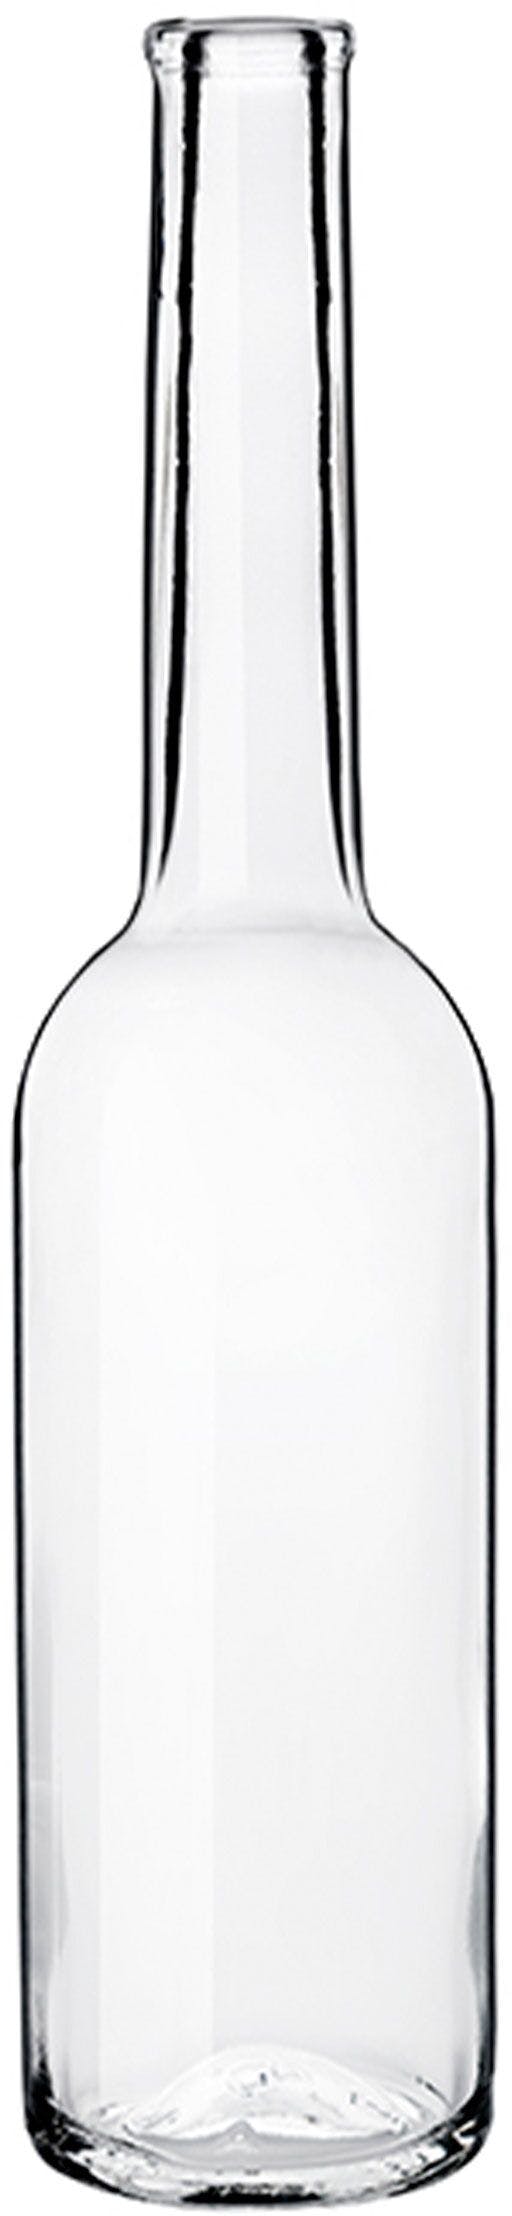 Bottiglia SINFONIA  100 ml BG-Sughero